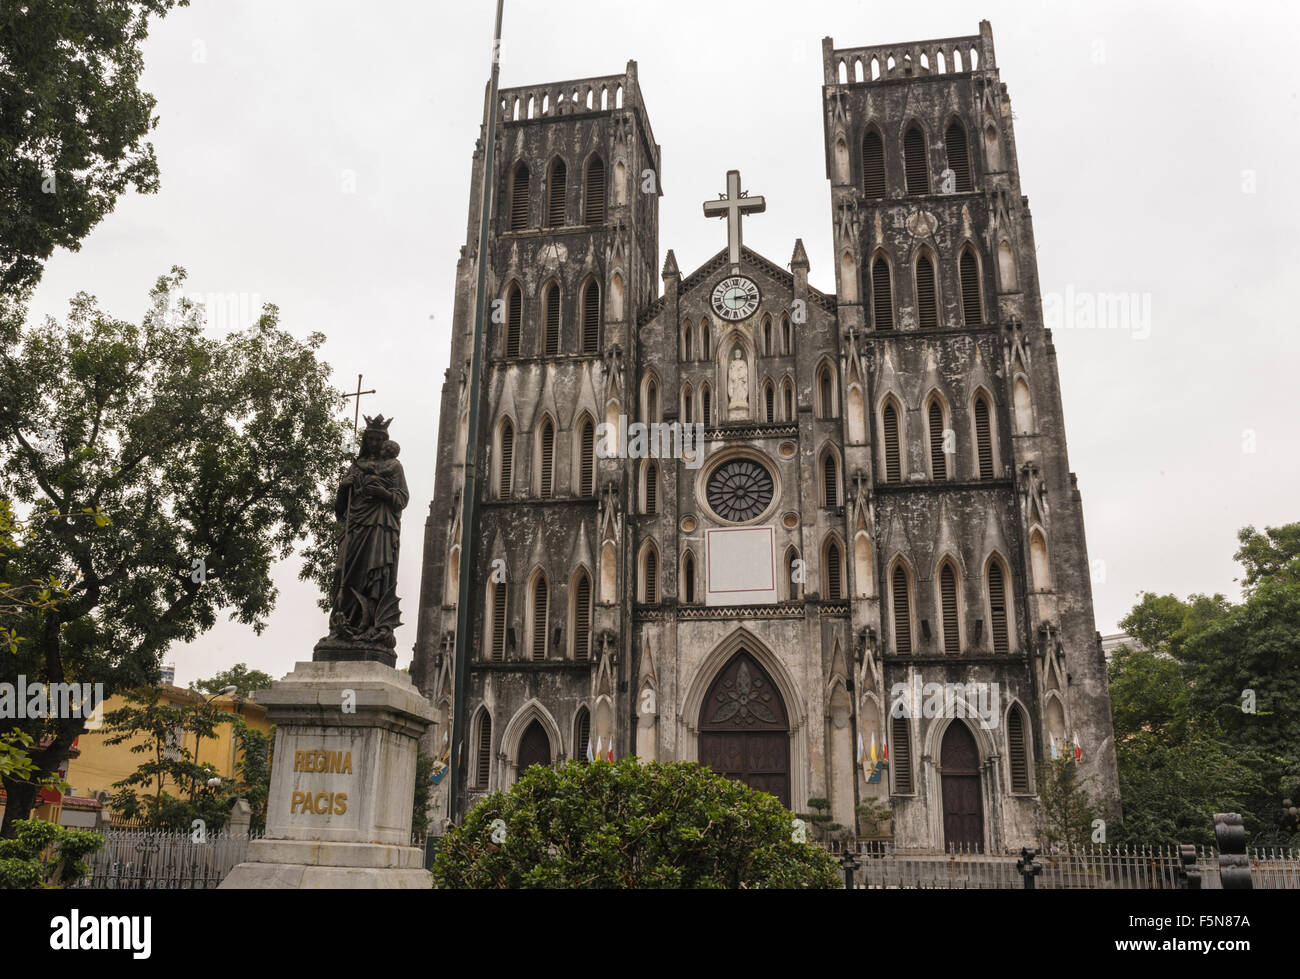 De style gothique, l'architecture de l'église cathédrale St Joseph à Hoan Kiem Hanoi, Vietnam. Banque D'Images